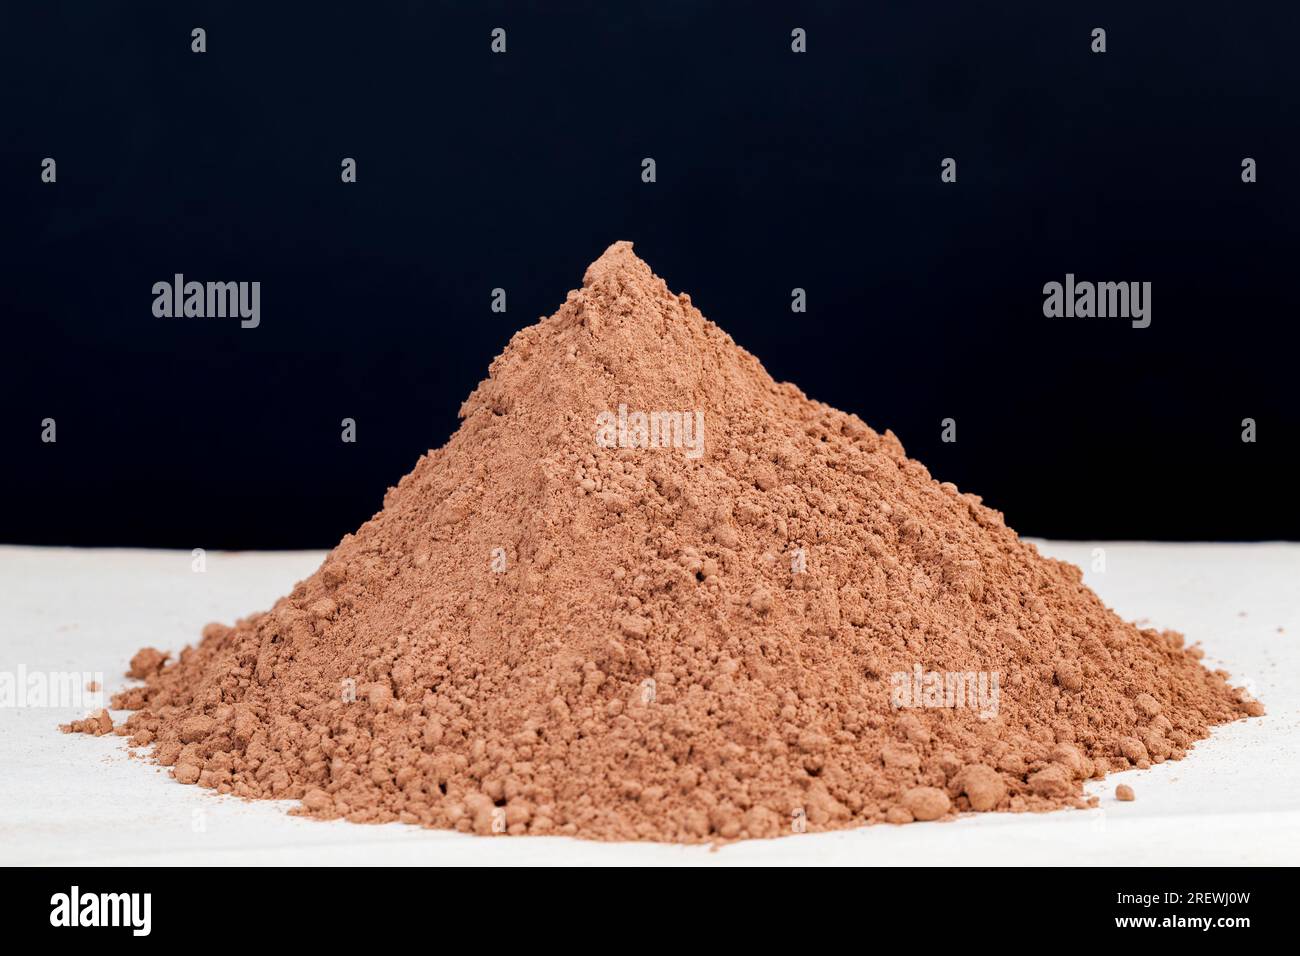 la nitidezza selettiva e una piccola profondità di campo, il cacao in polvere viene utilizzato in cottura, una grande pila a base di fagioli di cacao in polvere per la produzione del cioccolato o dell'avena Foto Stock